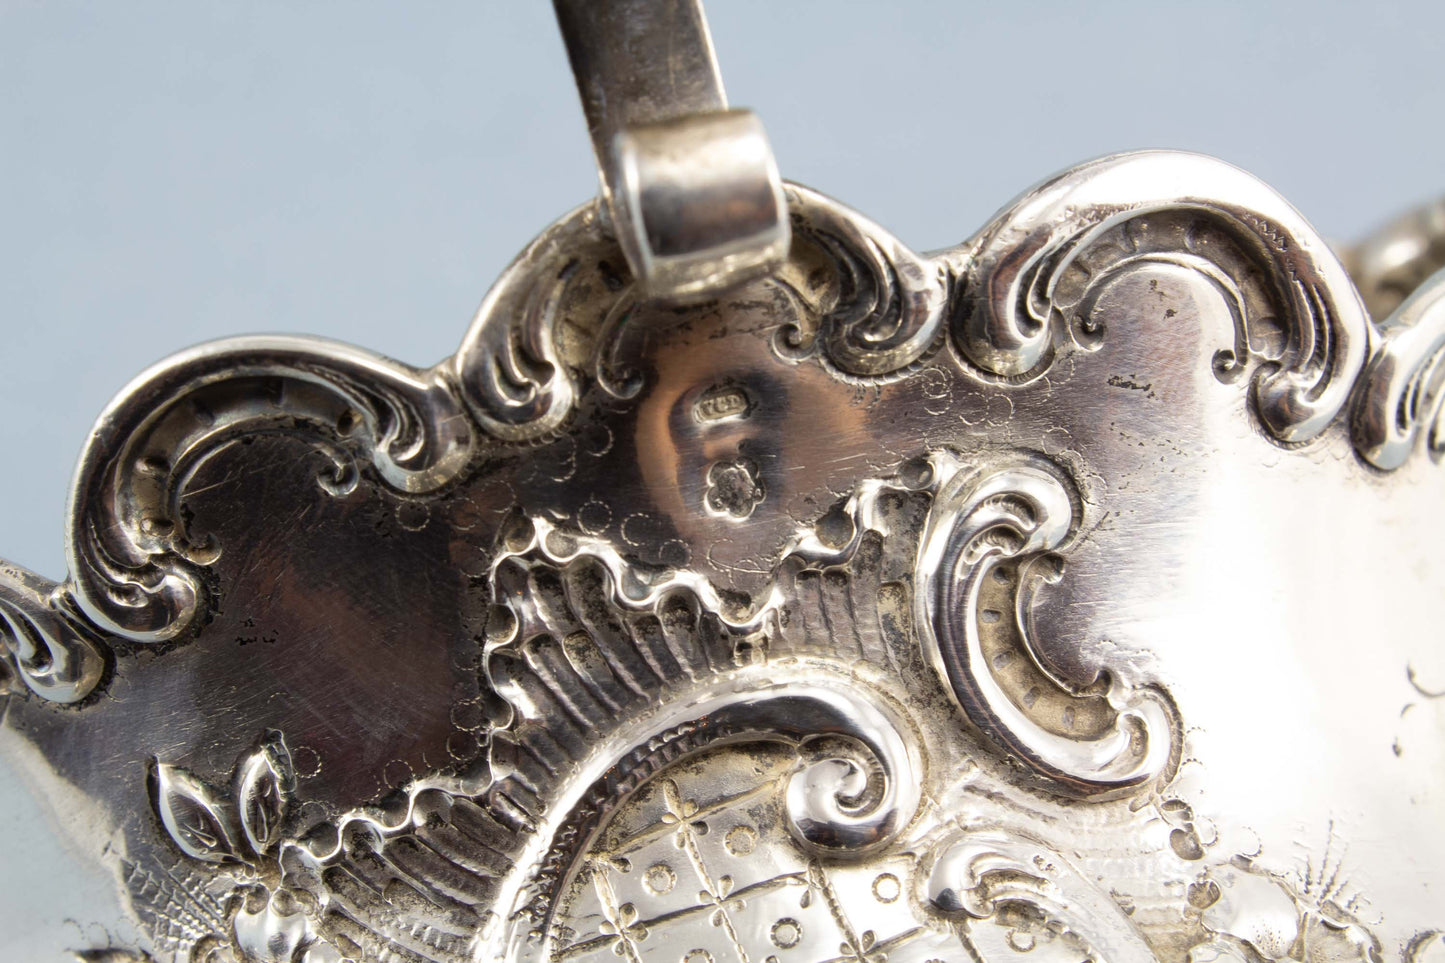 Wunderschöne silberne Henkelschale aus Österreich, antike Silber-Schale, Diana-Kopf